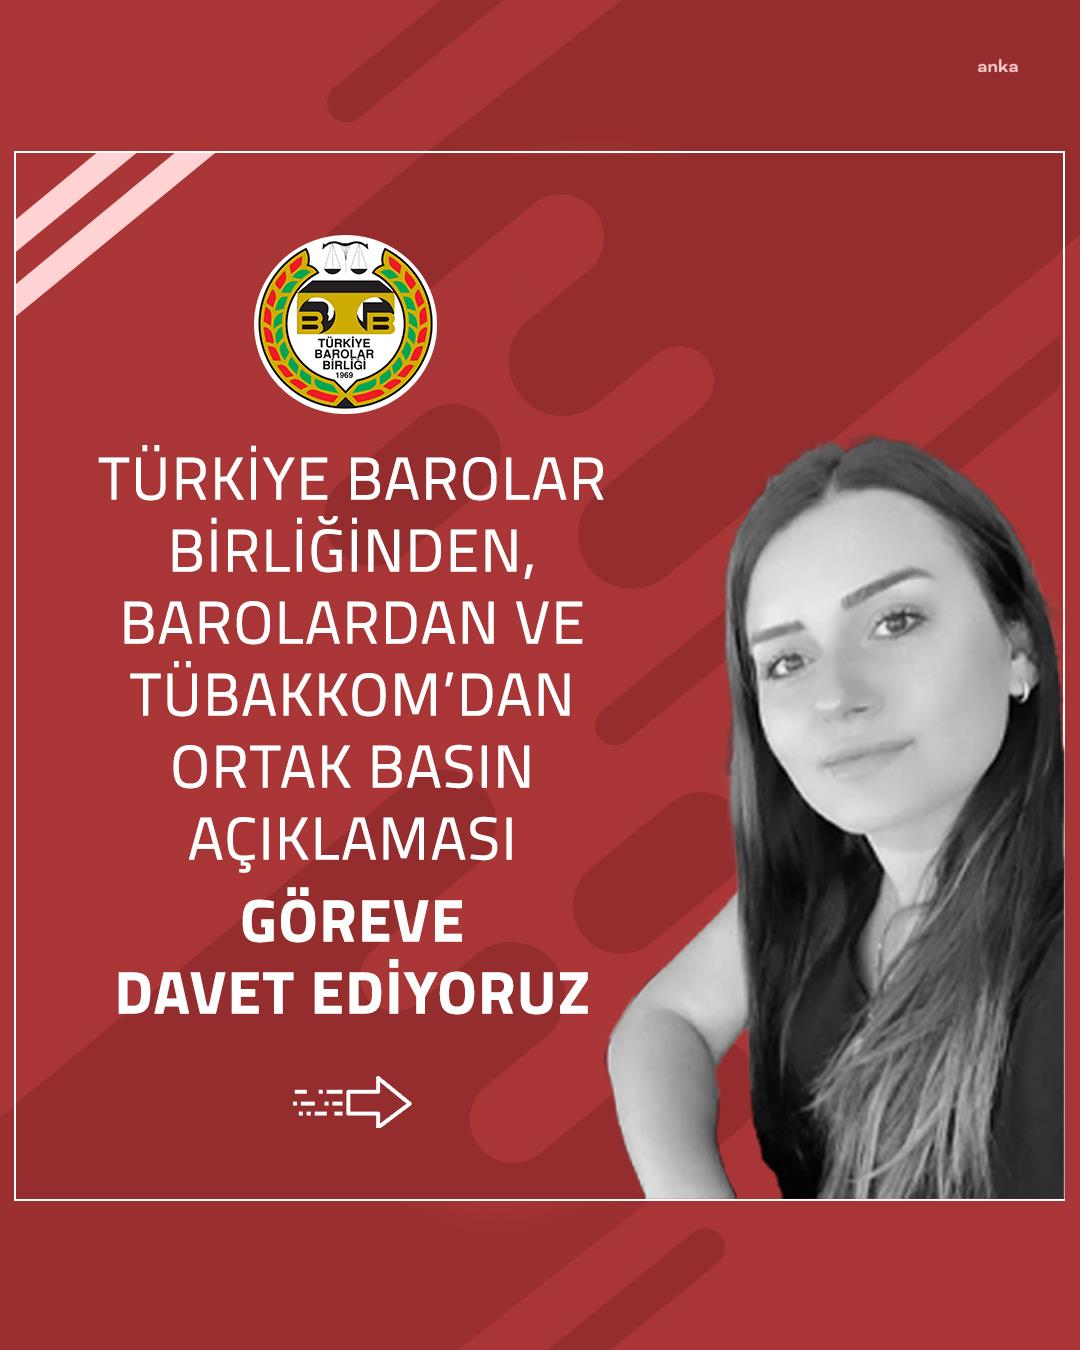 Barolardan Dilara Yıldız açıklaması: "İktidar İstanbul Sözleşmesi'nden imzayı çekerek kadınları daha da korumasız bıraktı"